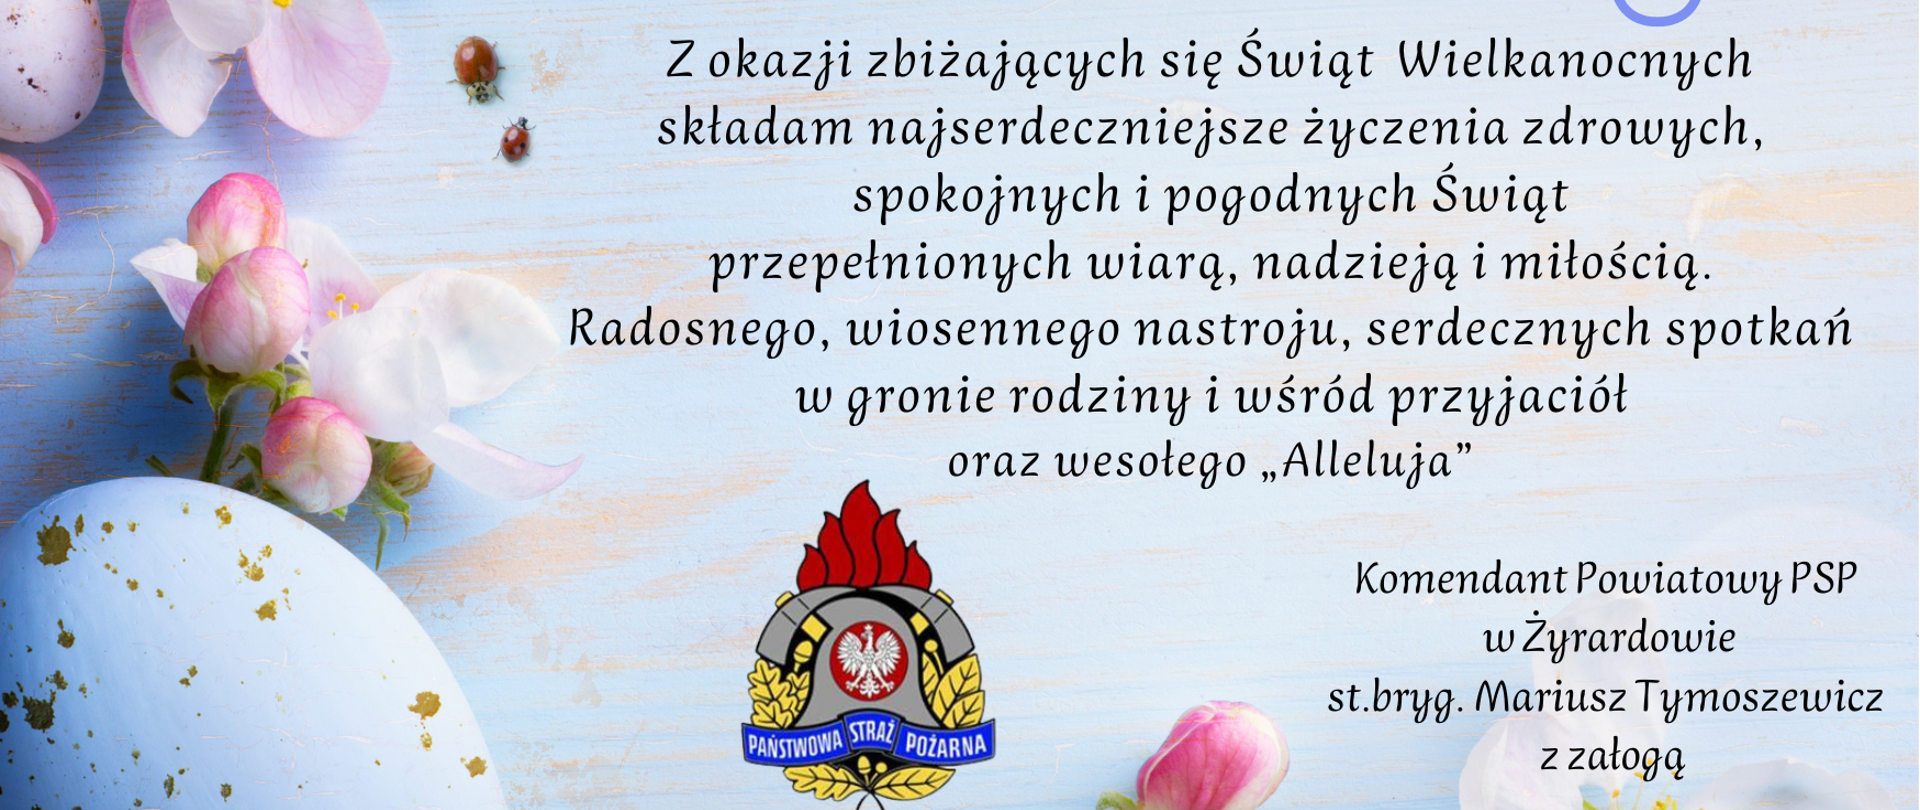 Życzenia Wielkanocne Komendanta Powiatowego Państwowej Straży Pożarnej w Żyrardowie